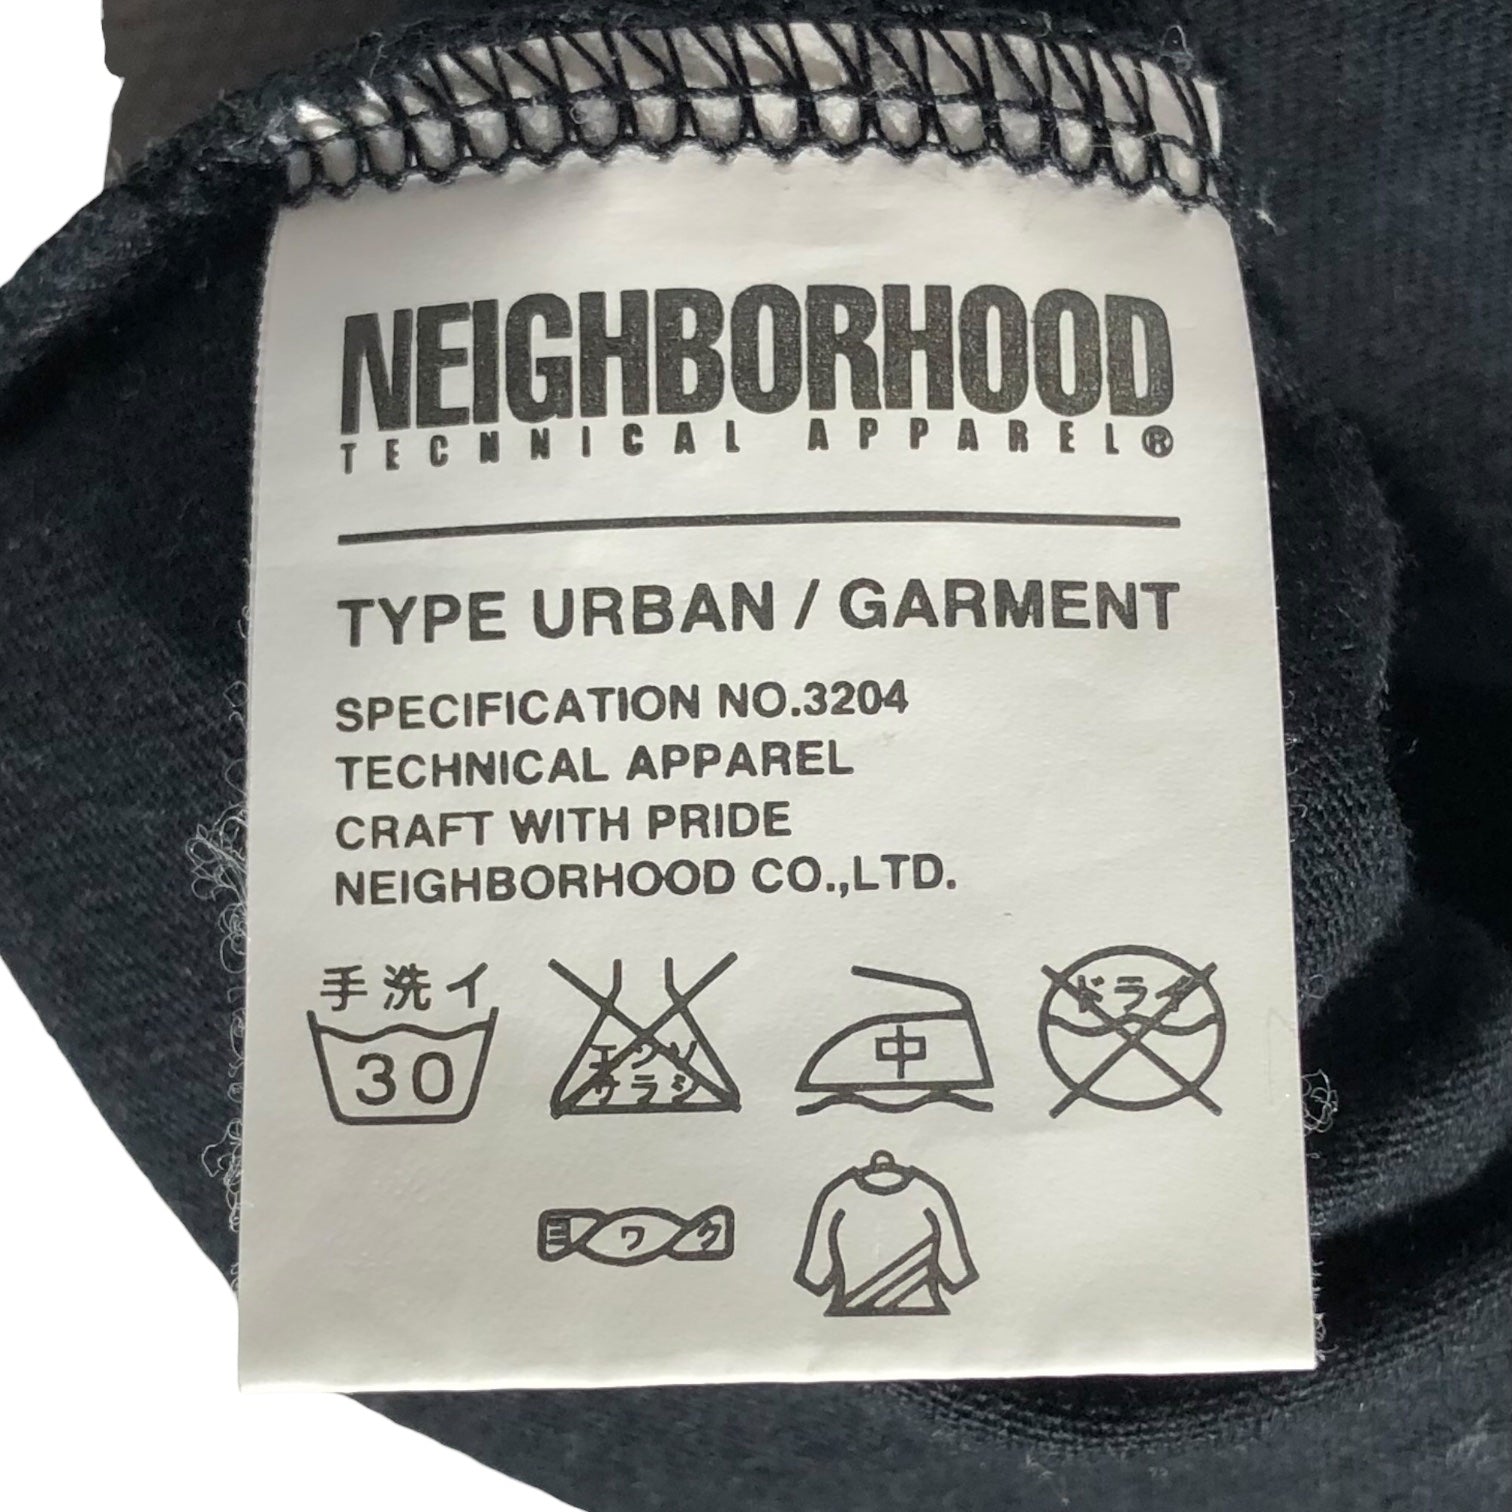 NEIGHBORHOOD × FRAGMENT DESIGN(ネイバーフッド×フラグメントデザイン) 00's patch print T-shirt ワッペンプリント Tシャツ 1(S) ブラック